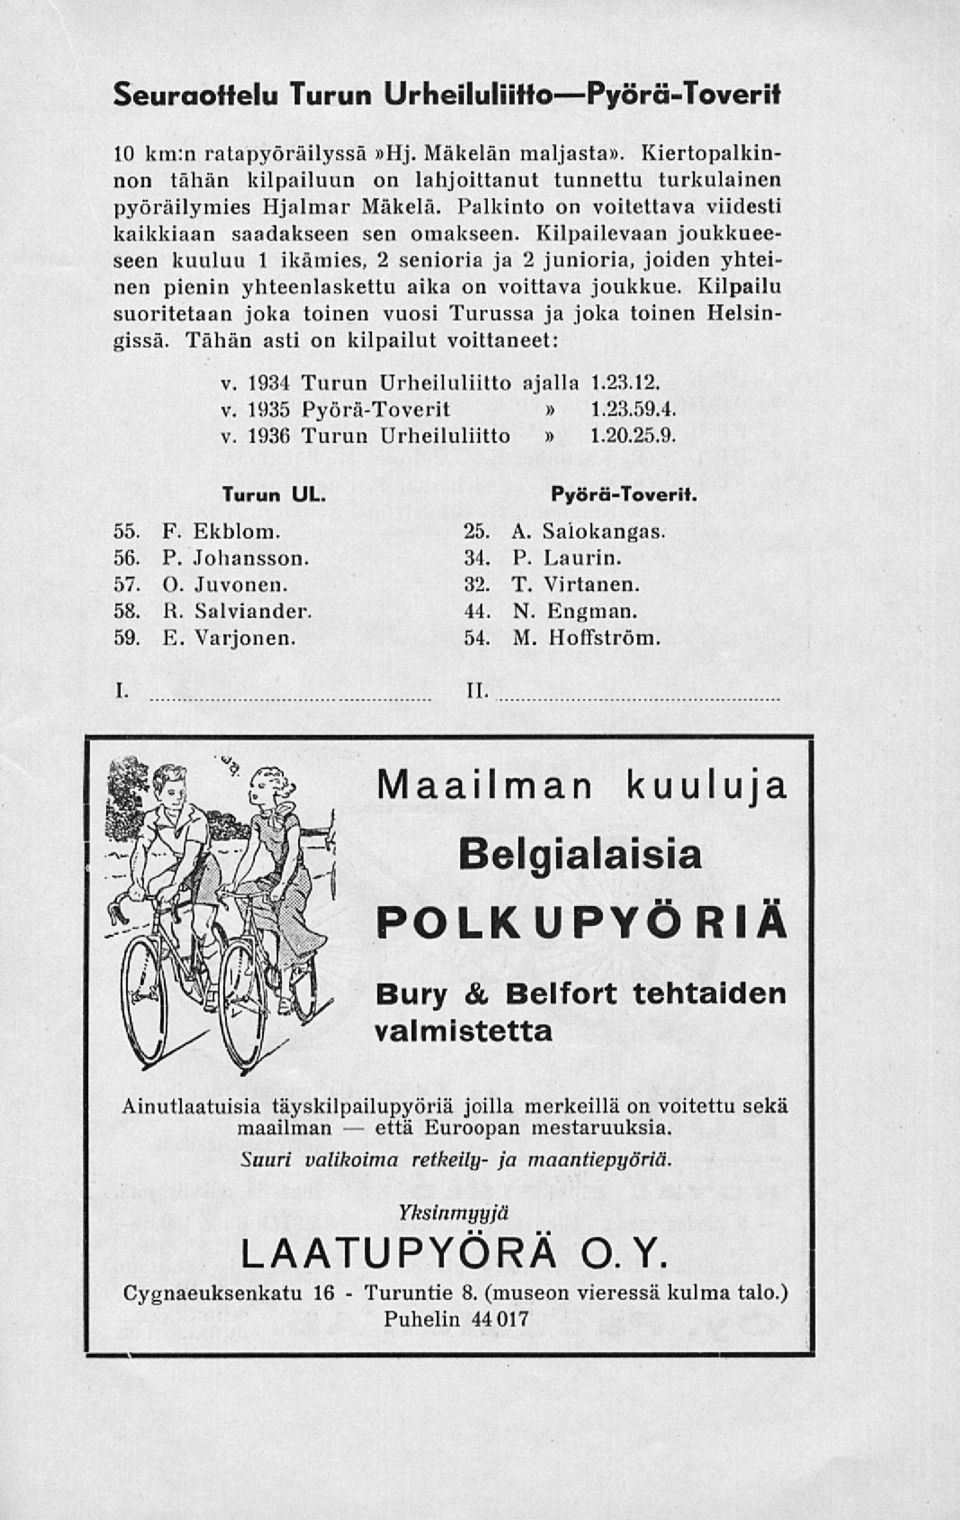 Kilpailu suoritetaan joka toinen vuosi Turussa ja joka toinen Helsingissä. Tähän asti on kilpailut voittaneet: v. 1934 Turun Urheiluliitto ajalla 1.23.12. v. 1935 Pyörä-Toverit 1.23.59.4. v. 1936 Turun Urheiluliitto 1.